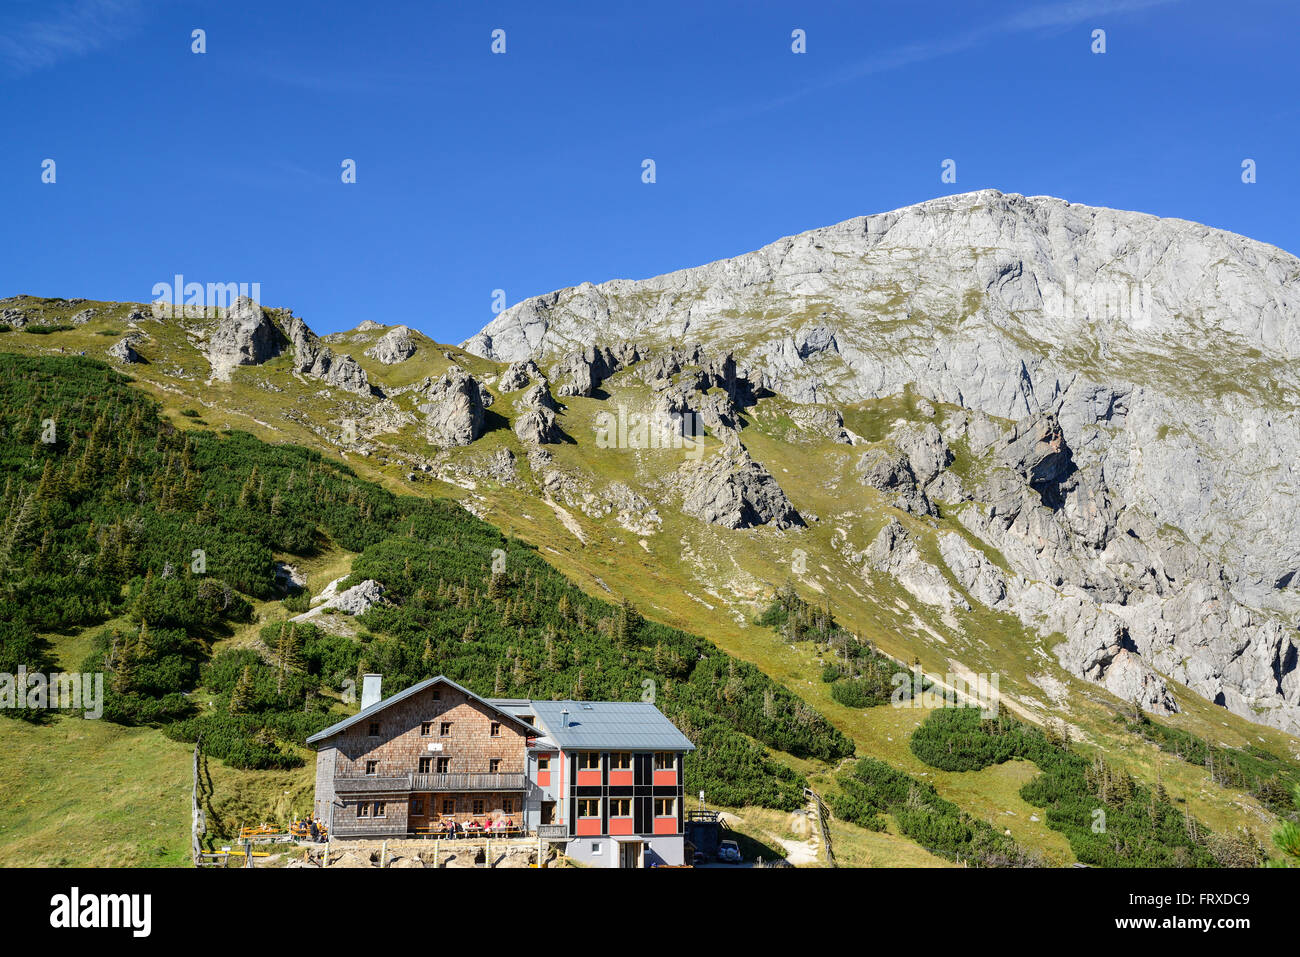 Hut Carl-von-Stahl-Haus en face de Hohes Brett, Torrener Joch, le parc national de Berchtesgaden, Alpes de Berchtesgaden, Upper Bavaria, Bavaria, Germany Banque D'Images